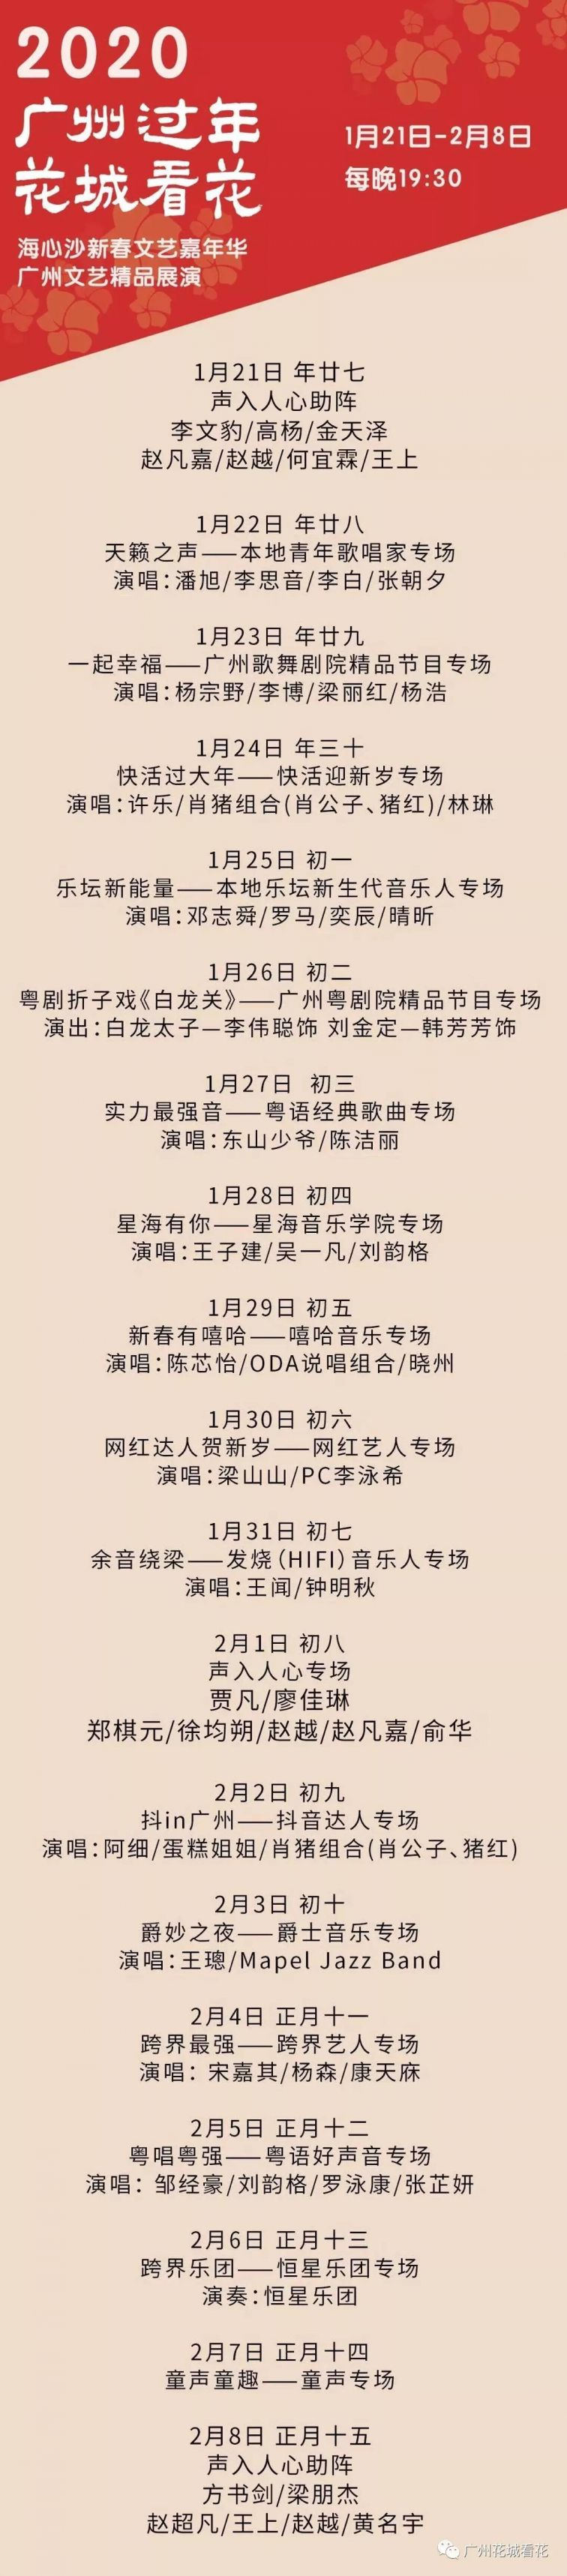 2020广州海心沙《美丽家园》演出阵容 节目单一览